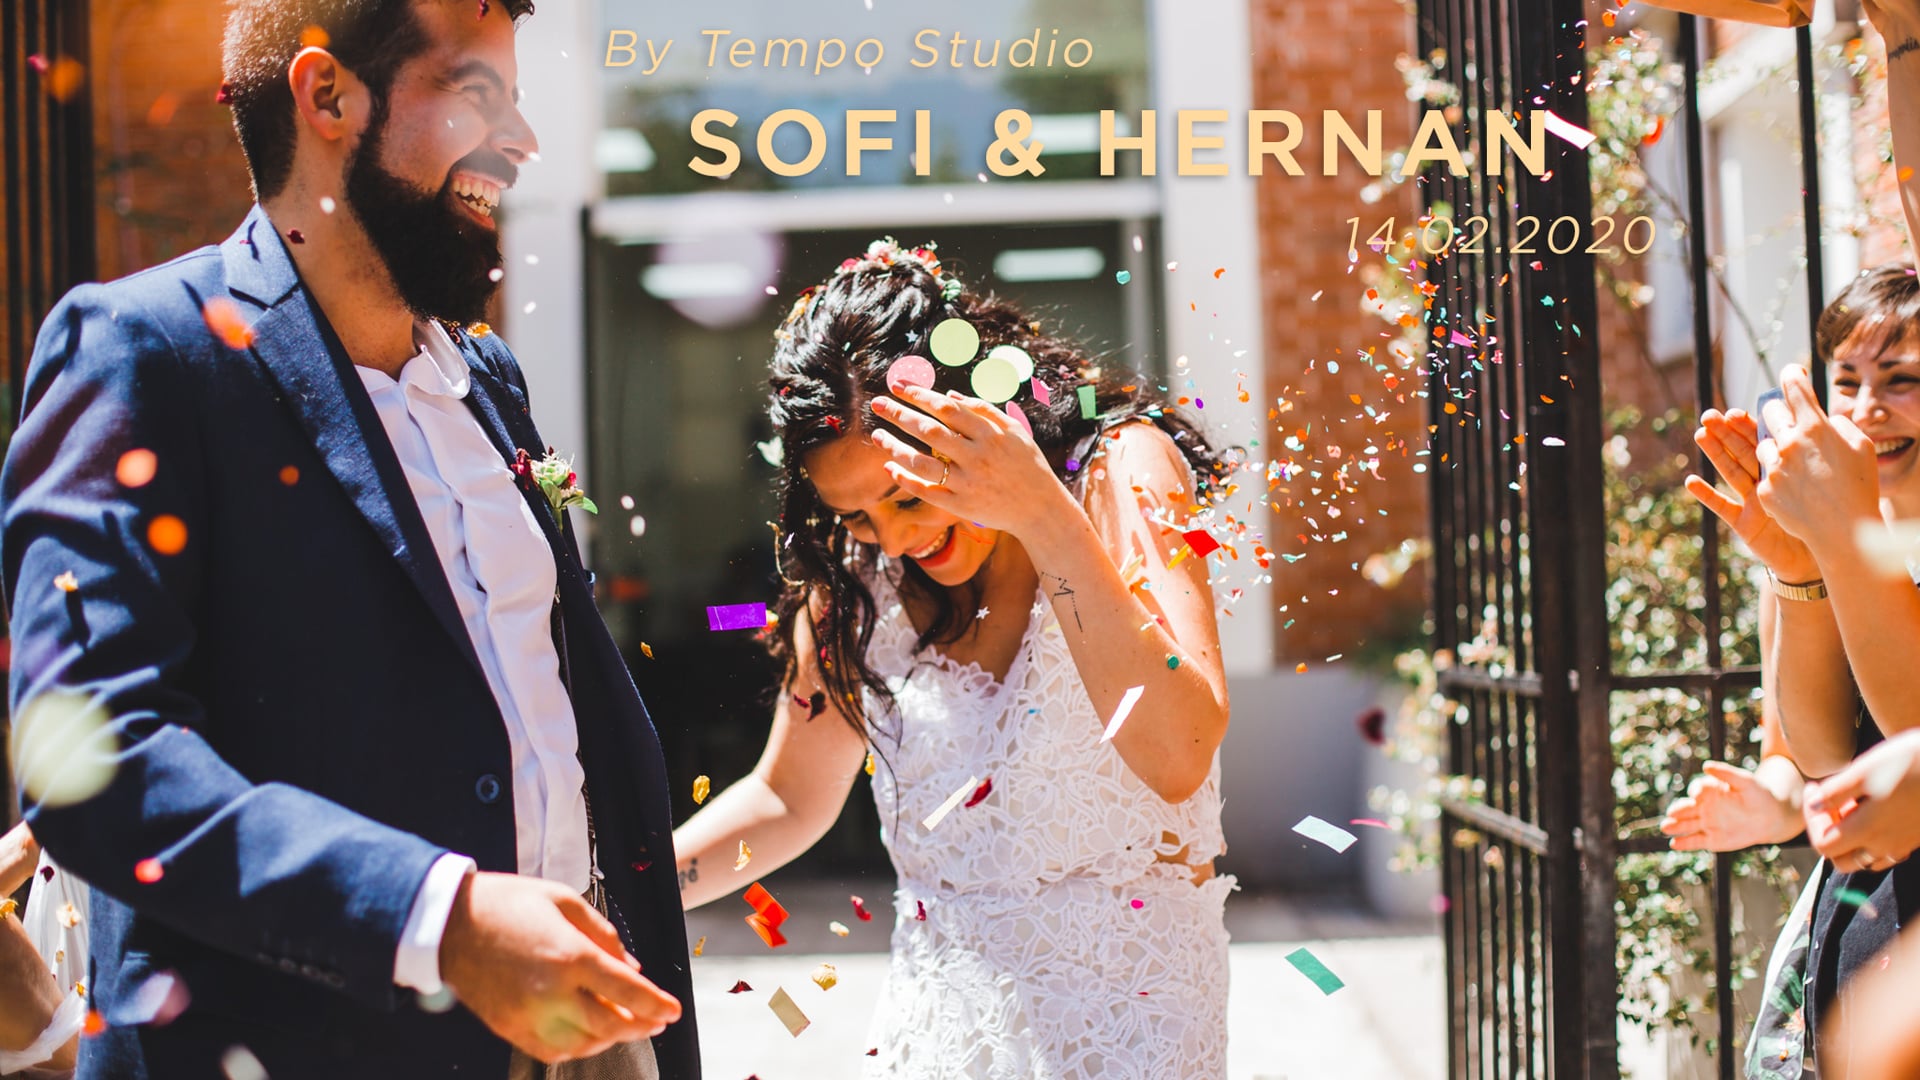 Sofi & Hernan | Trailer